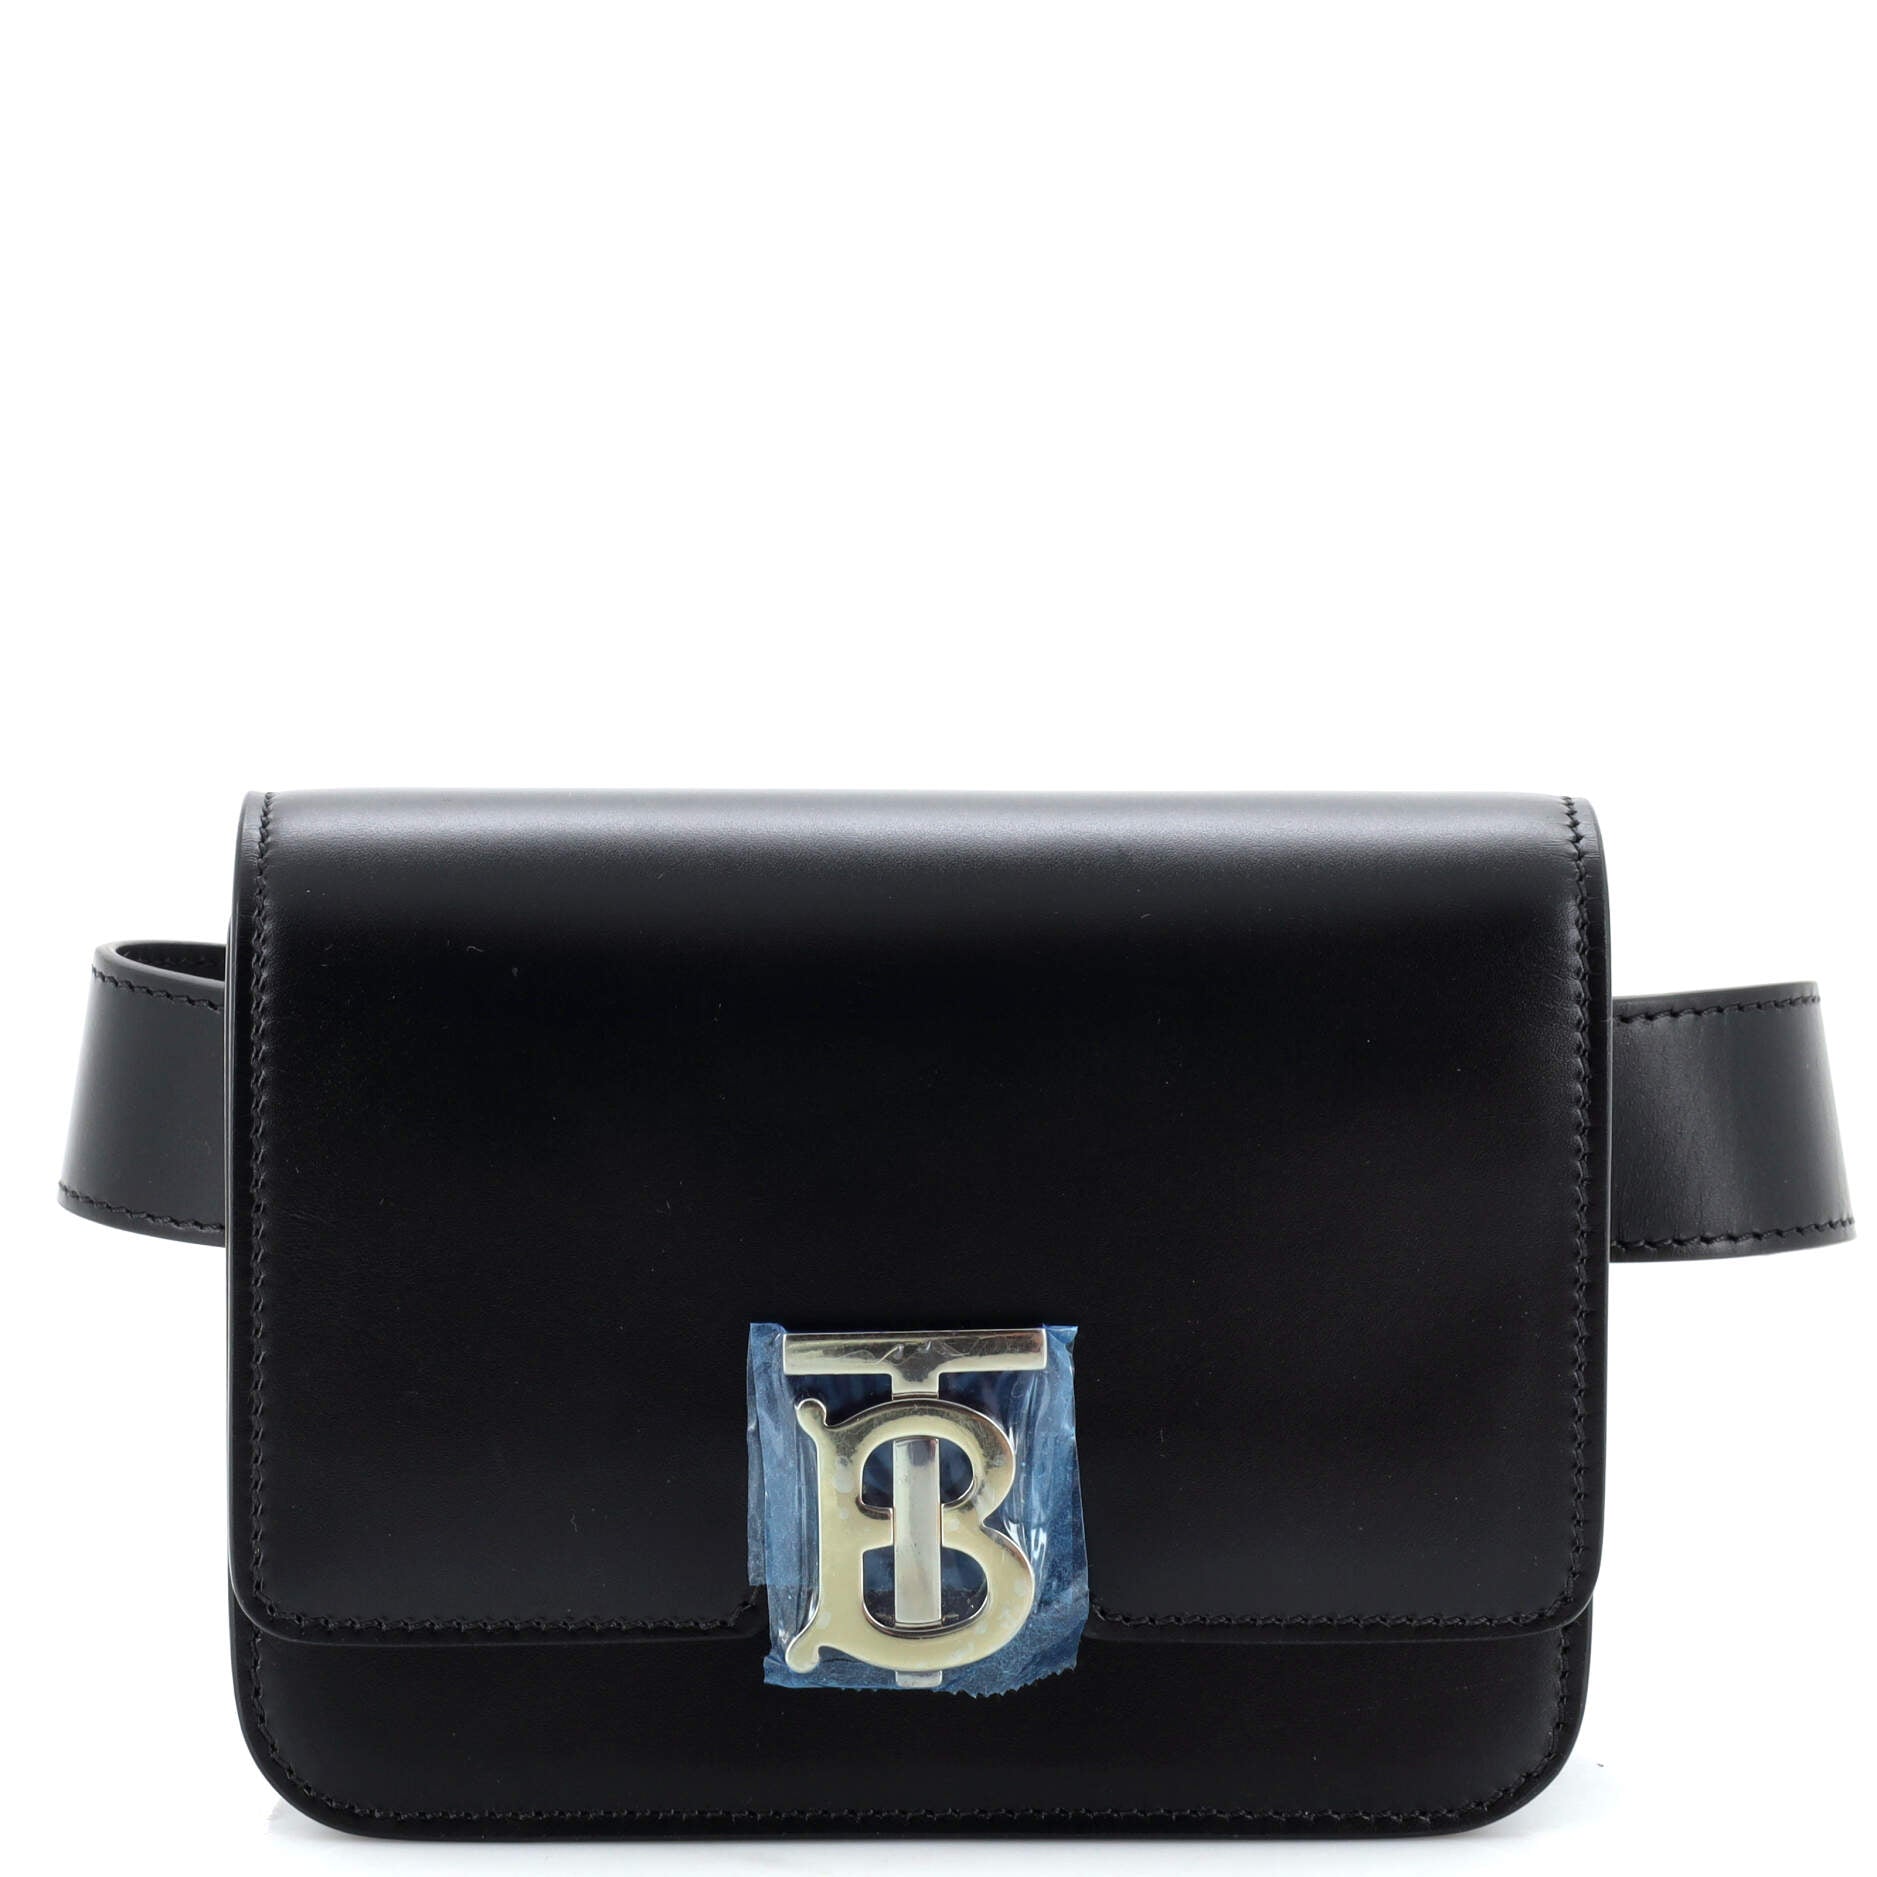 TB Belt Bag Leather